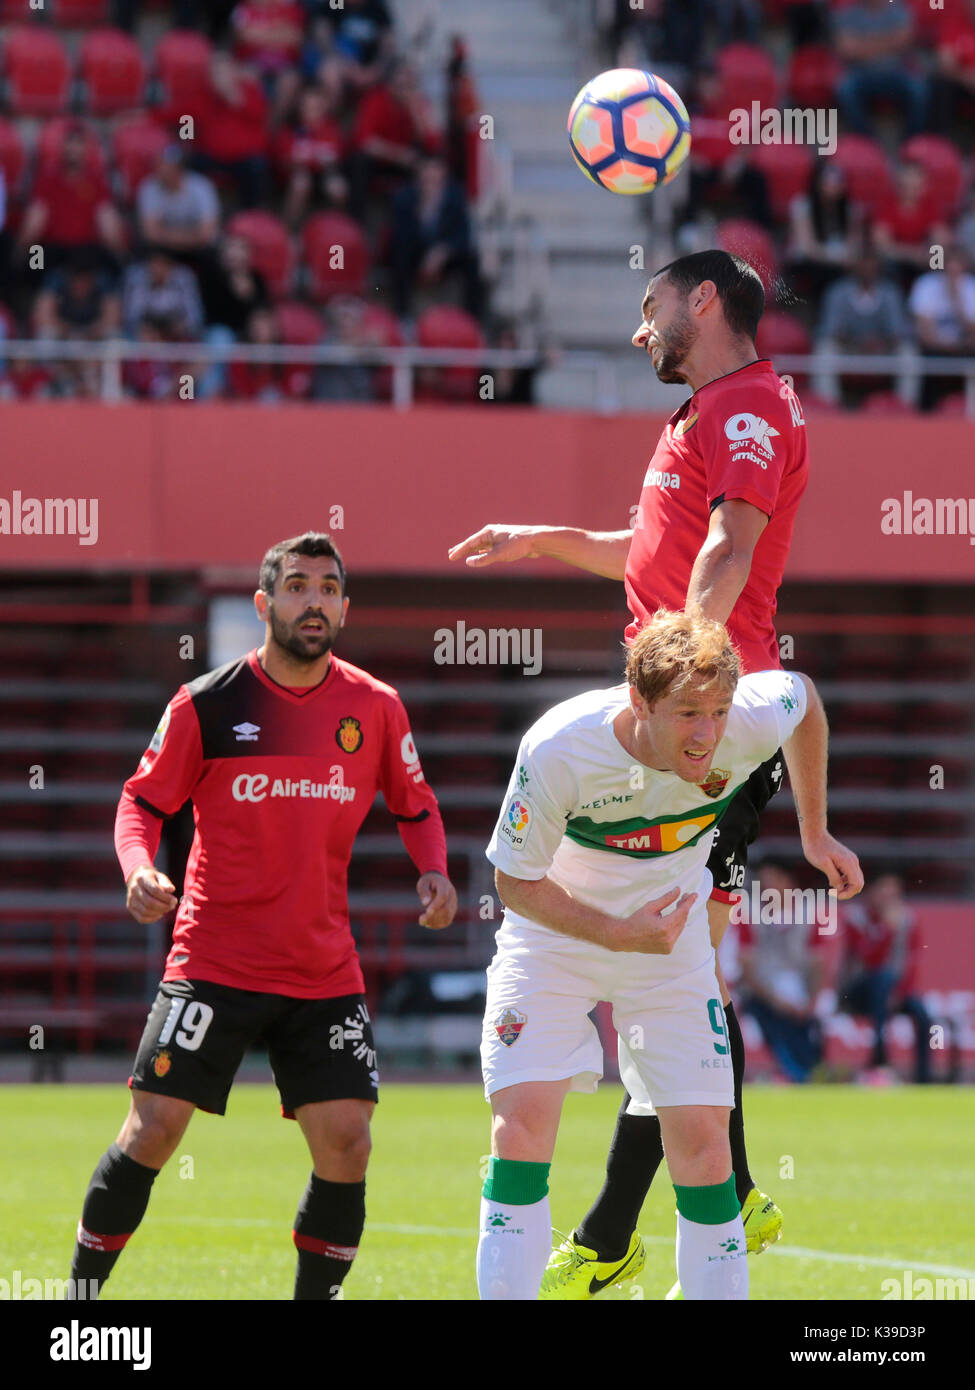 Real Player di mallorca capi la sfera contro sevilla atlético giocatore durante una partita in Mallorca. Foto Stock